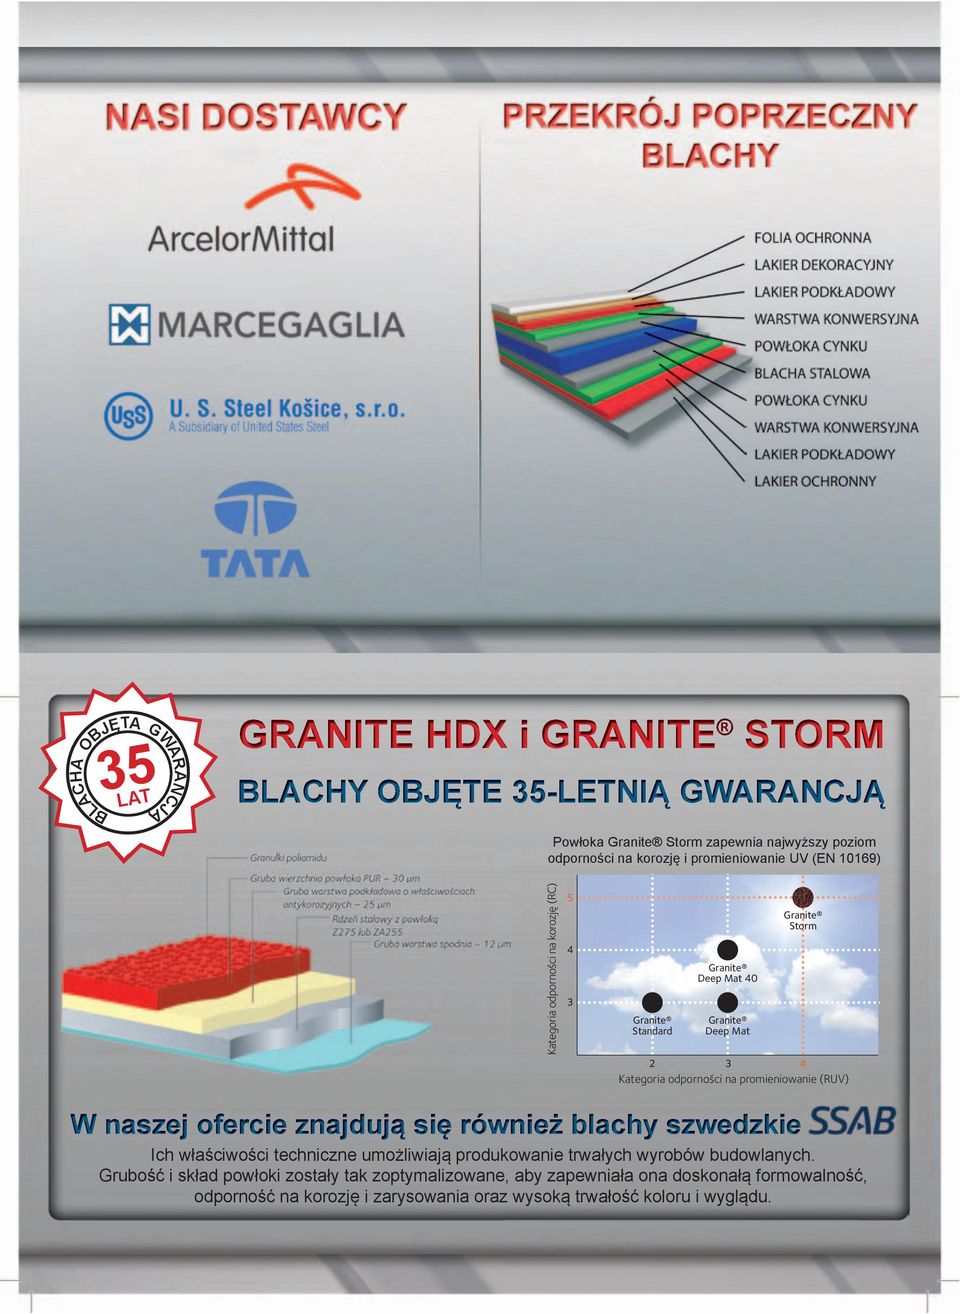 Granite Storm jest produkowany w kilku europejskich zakładach ArcelorMittal i dostosowany do użytku we wszystkich warunkach klimatycznych występujących w Europie.